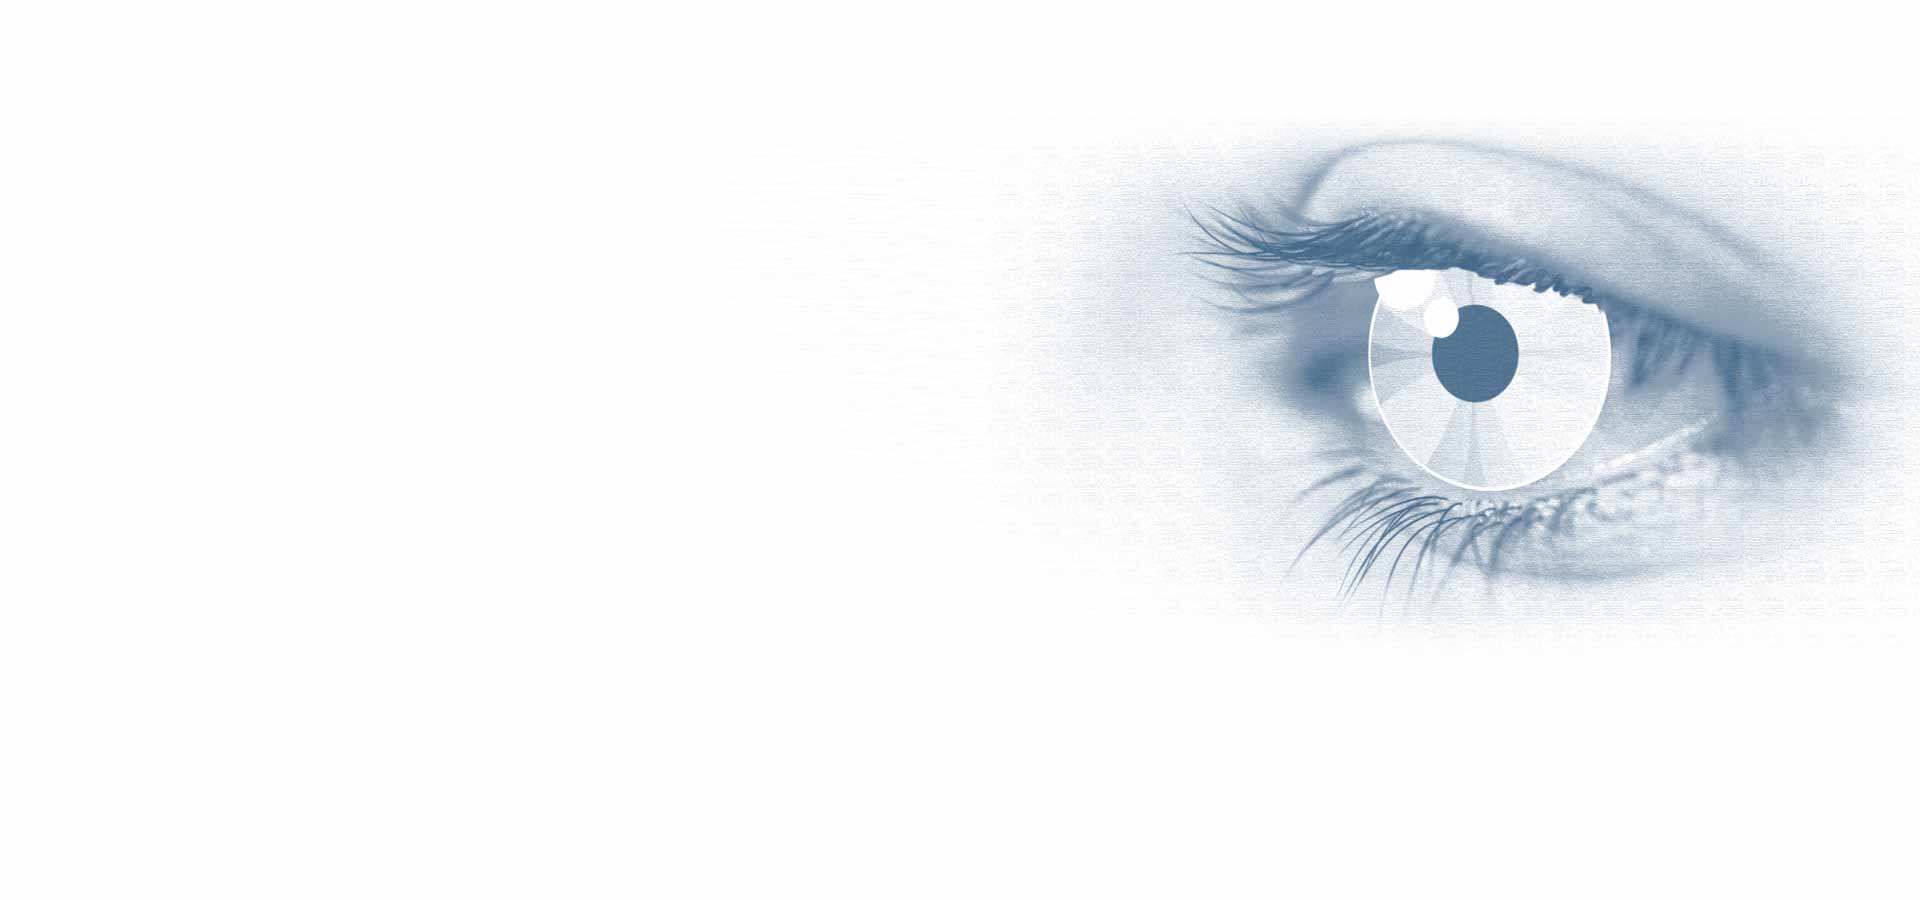 Las mejores lágrimas artificiales para ojos seco que puedes adquirir en la  farmacia - VISUfarma ES